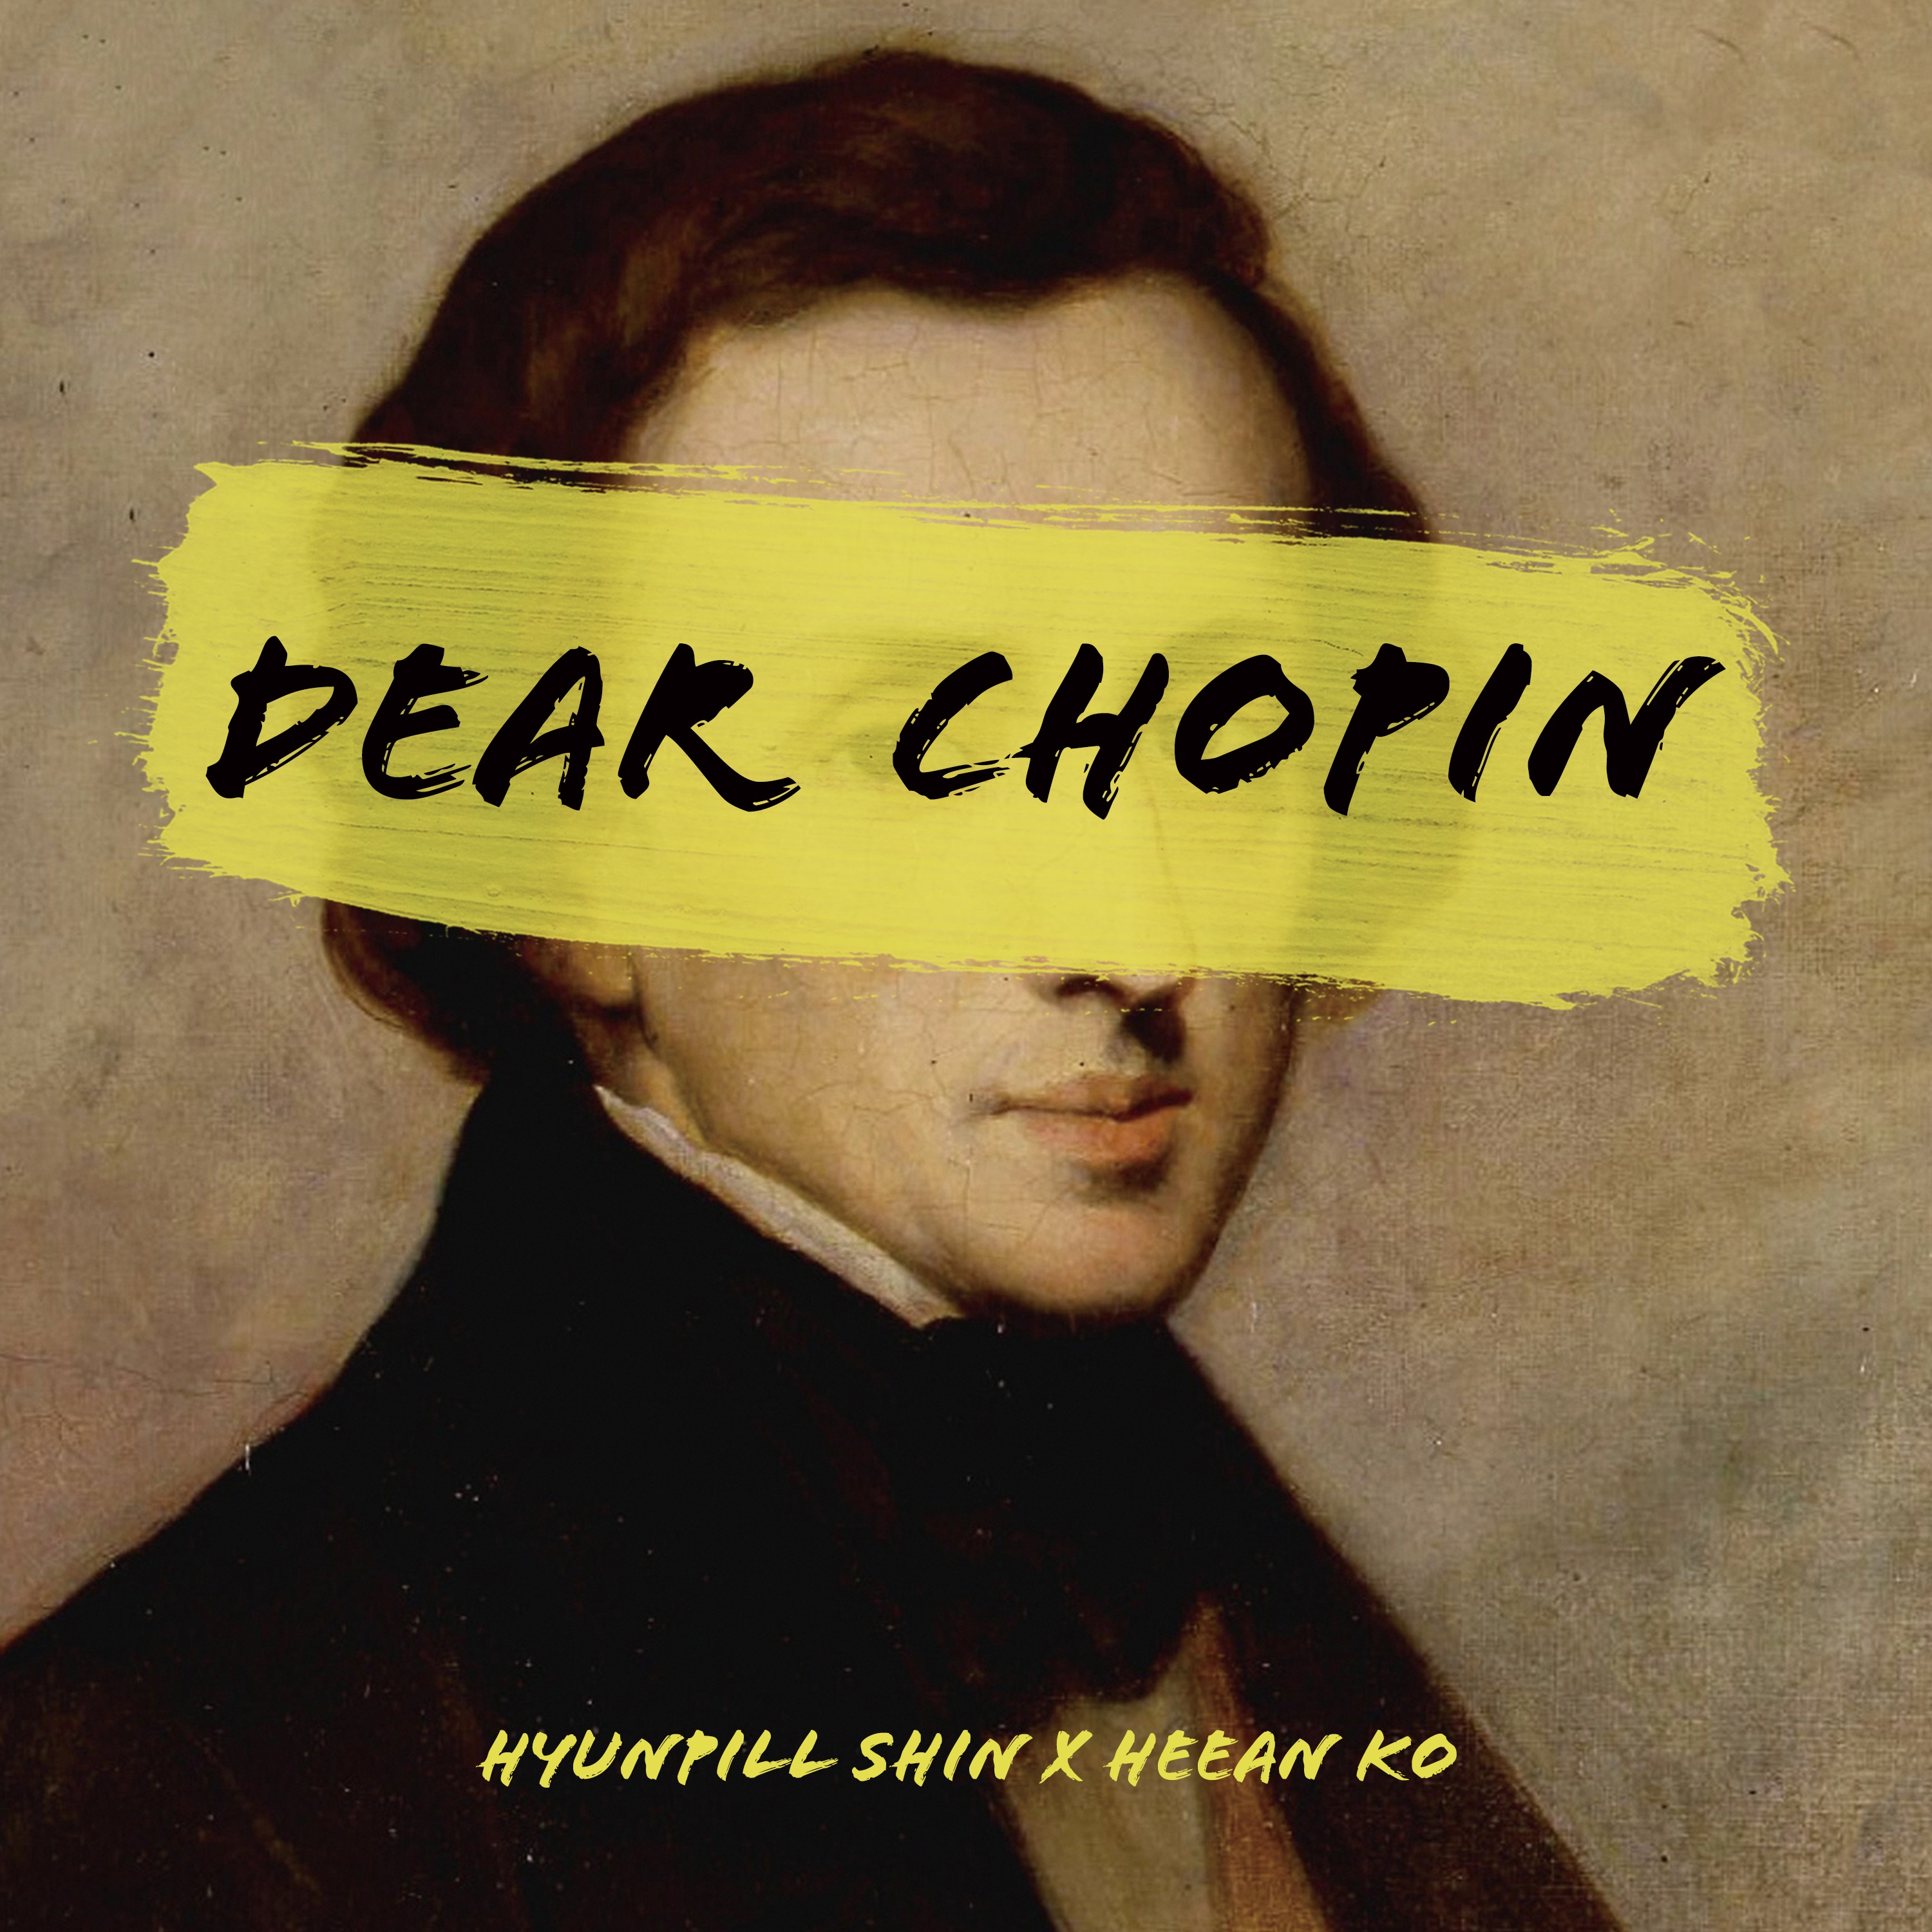 Dear Chopin